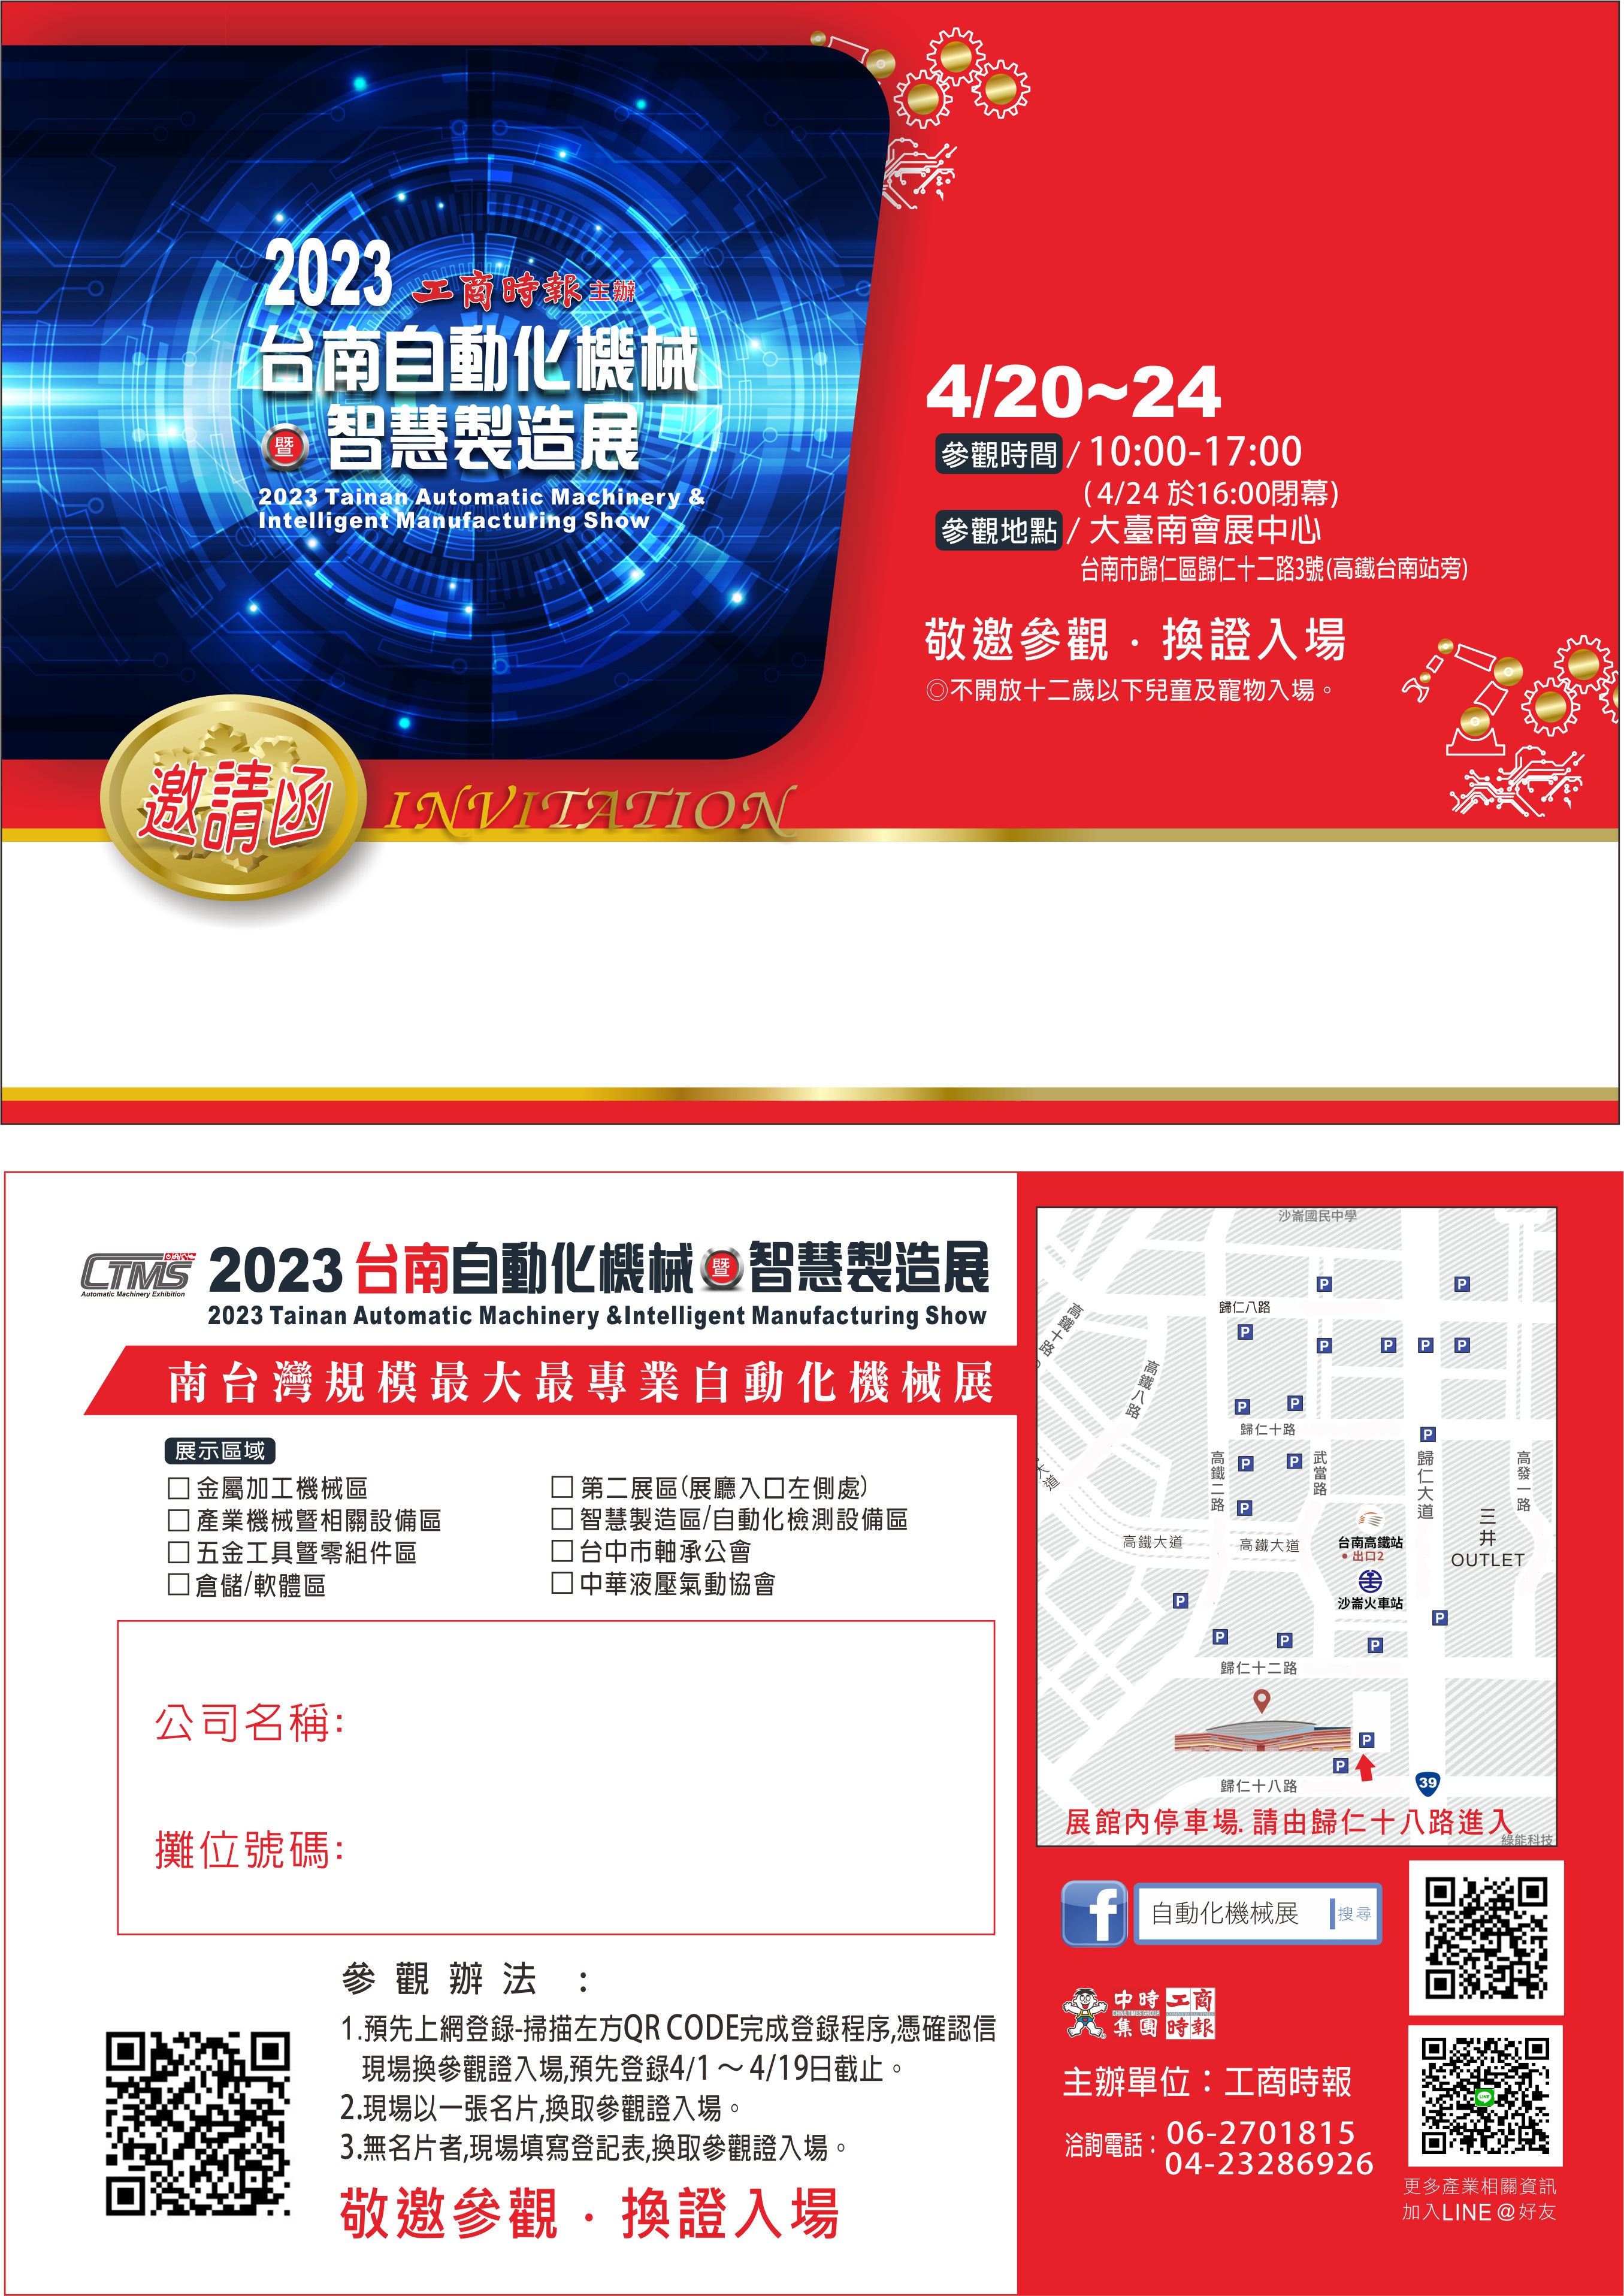 2023工商時報台南自動化機械暨智慧製造展_邀請涵